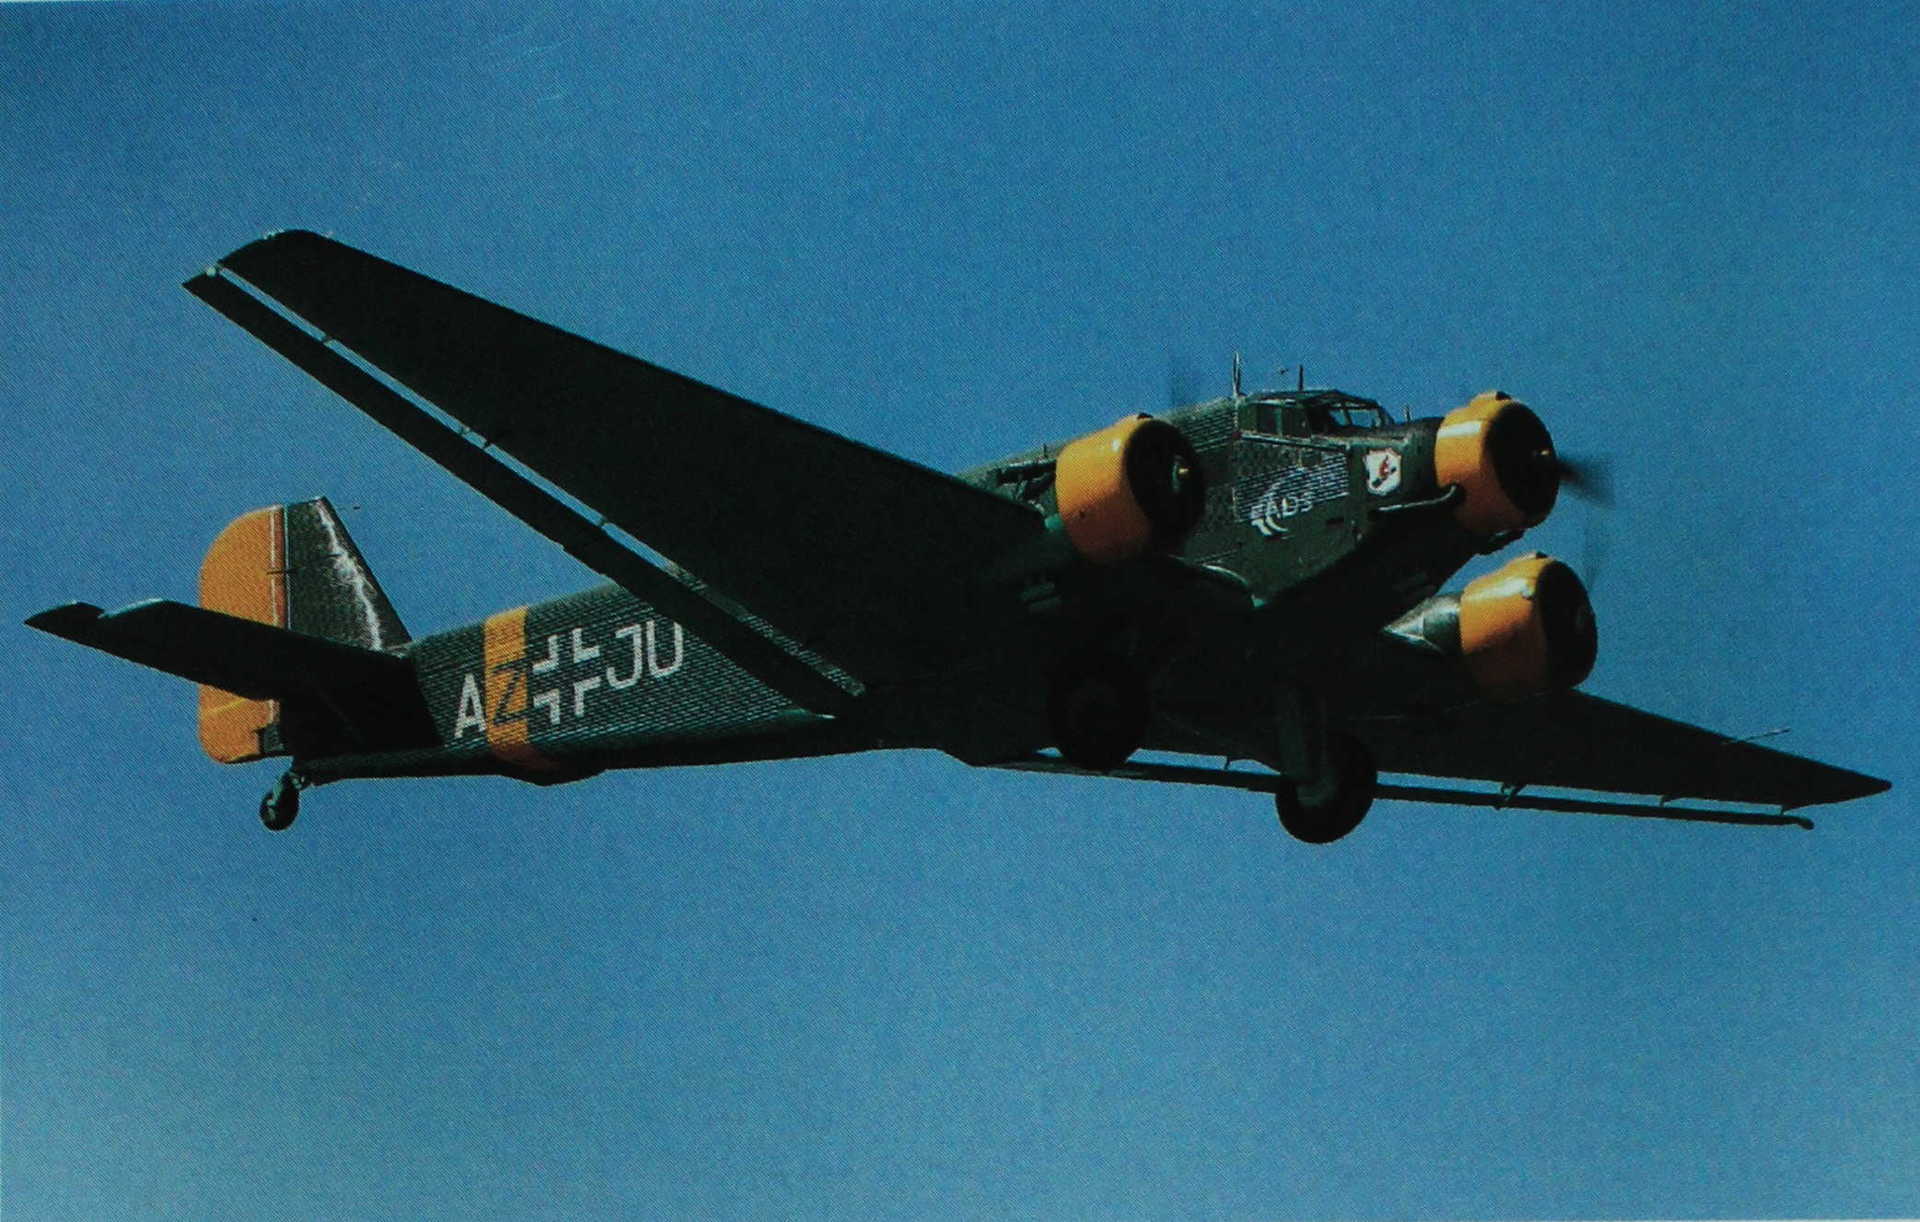 尽管是作为运输机而声名远扬,但荣克斯公司的ju52/3m是作为轰炸